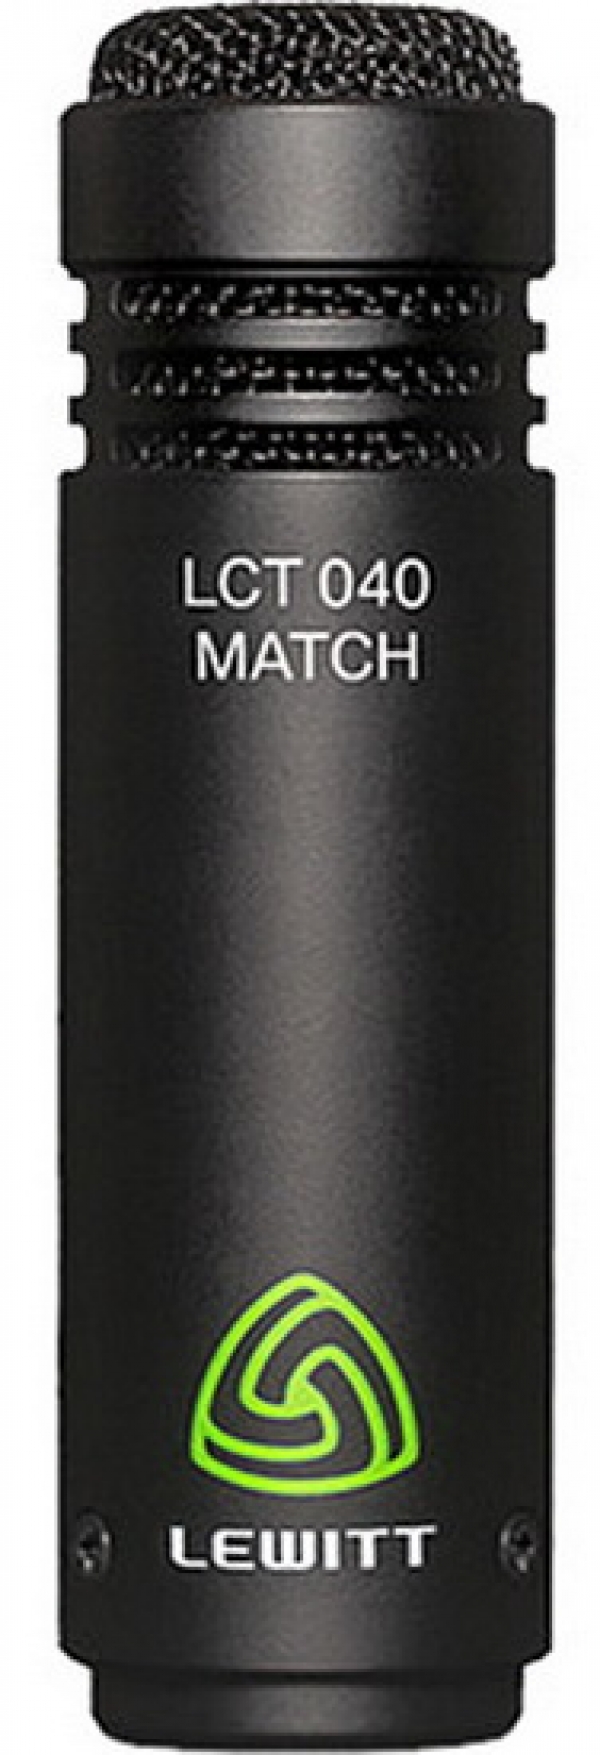 Lewitt LCT 040 MATCH – конденсаторный микрофон для домашних студий